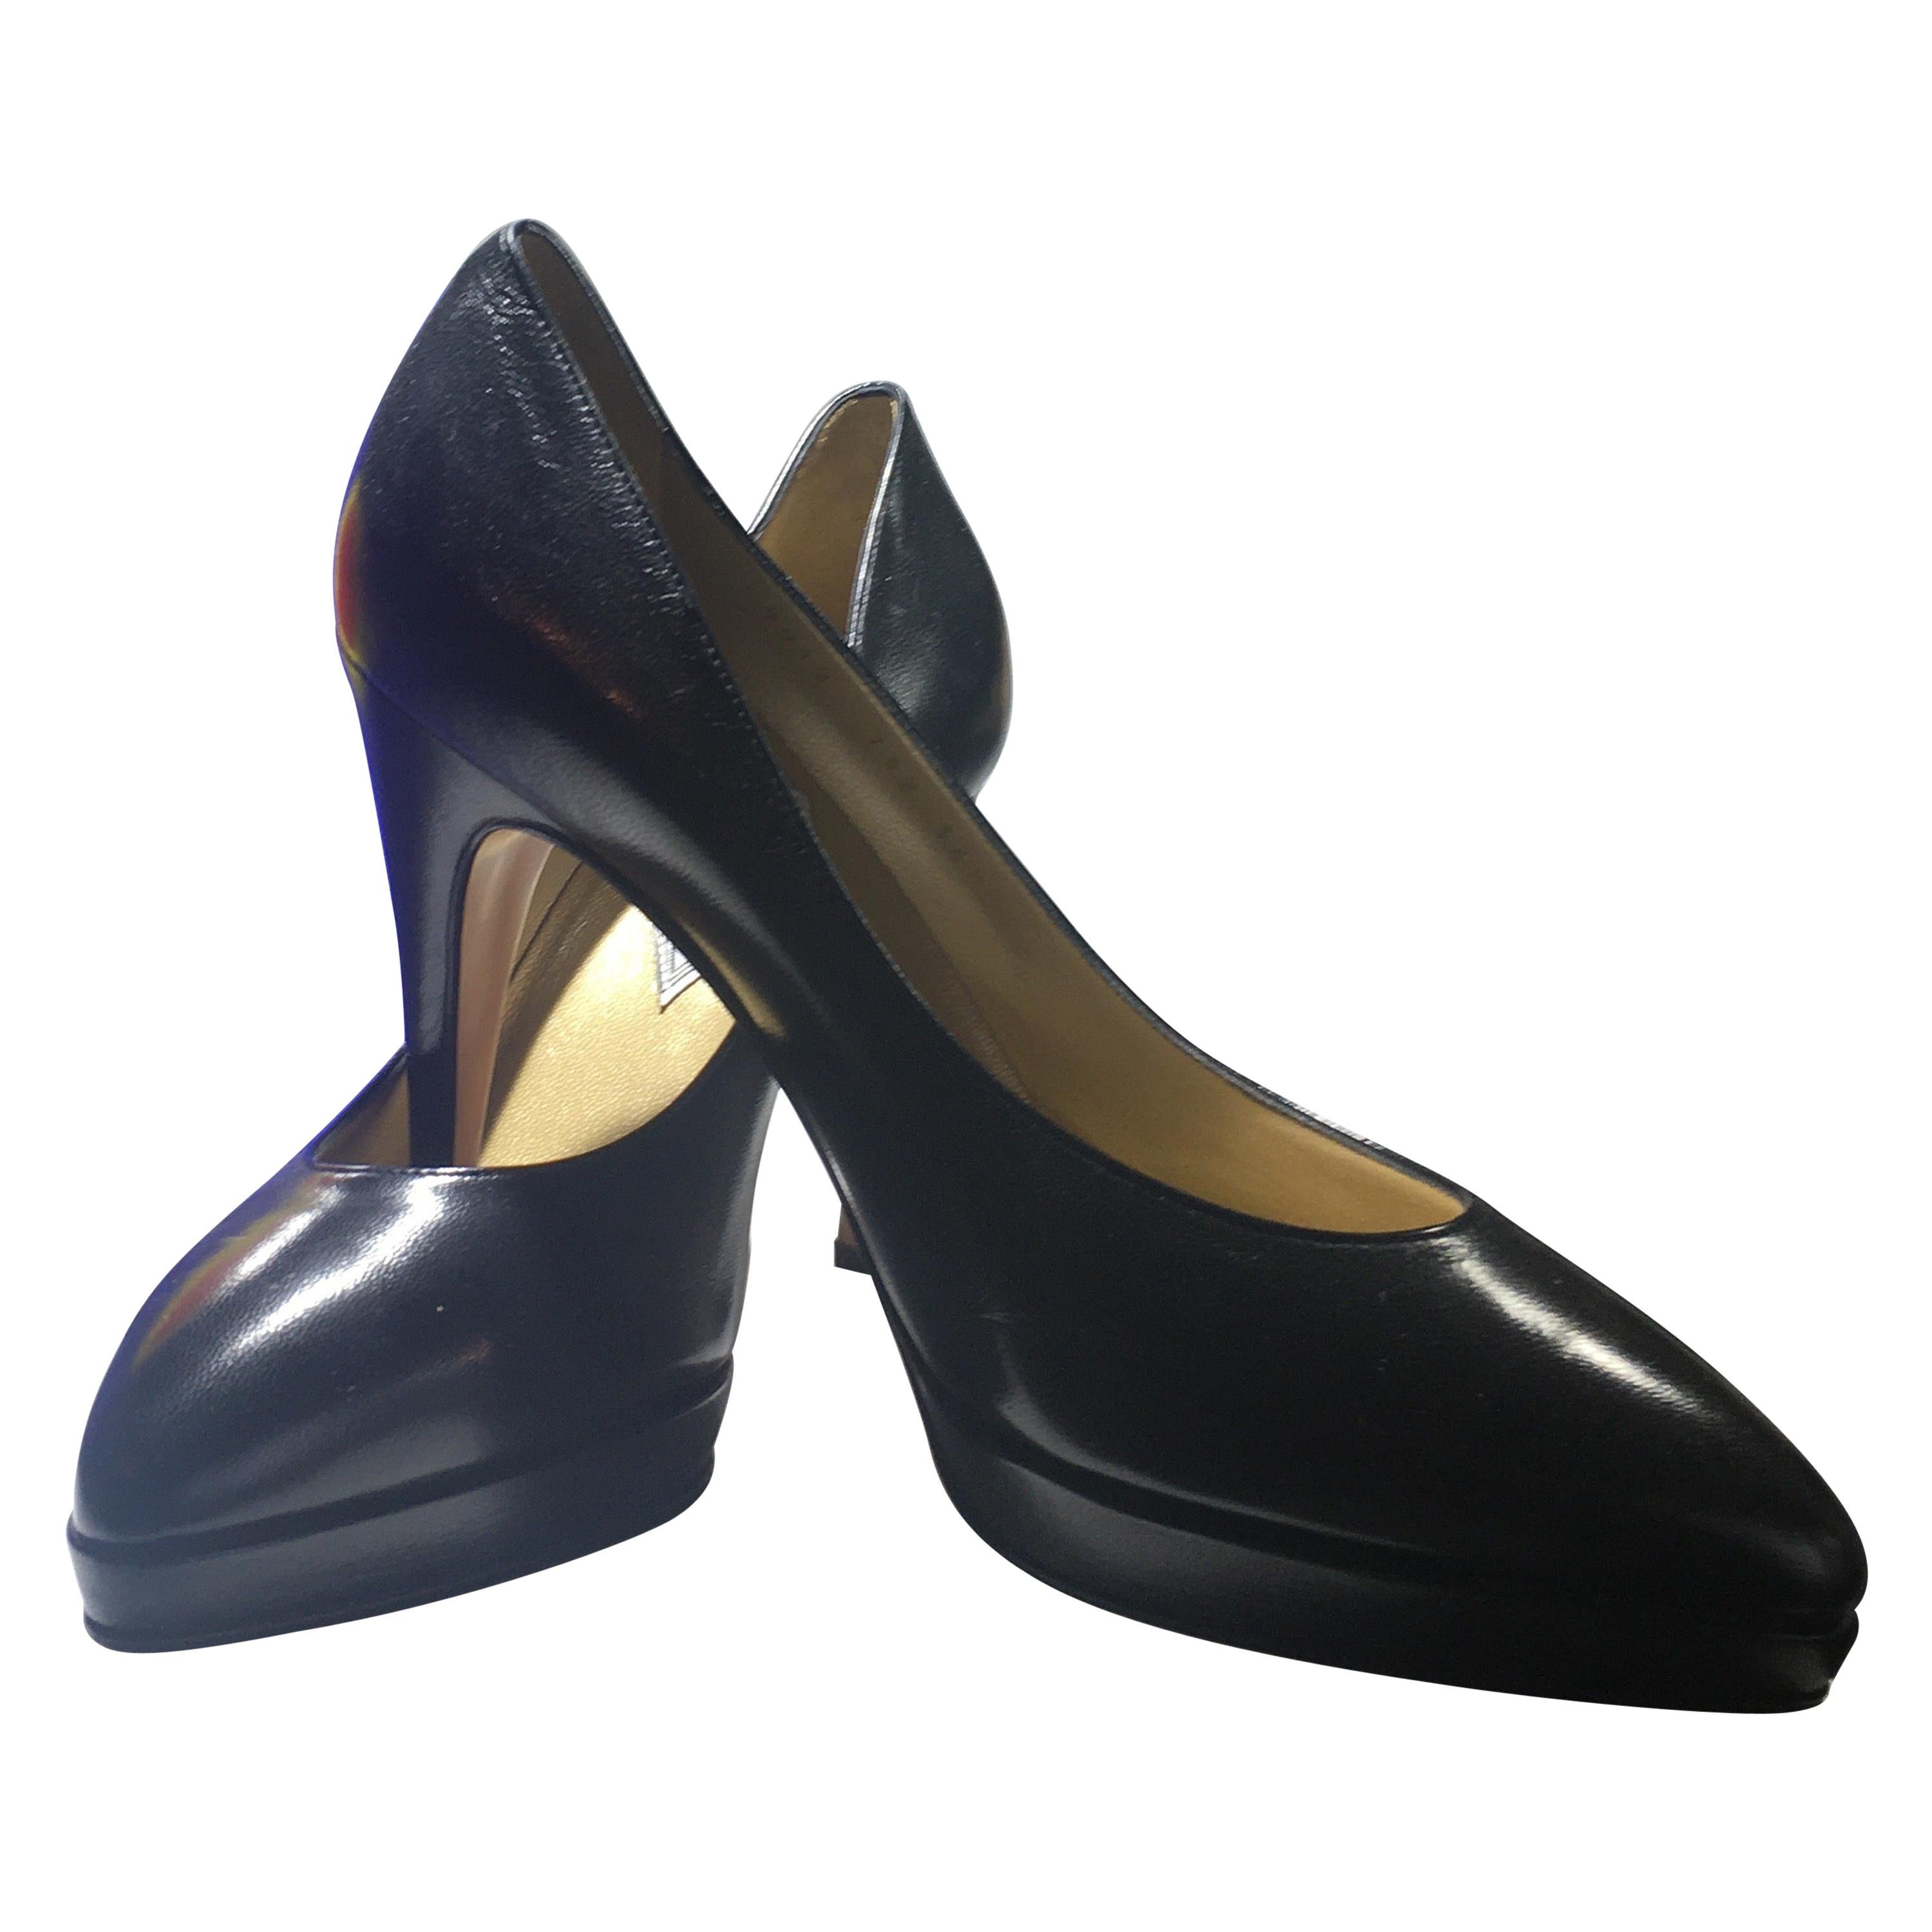 Atelier Versace Schwarze Lederhohe Heels mit Absatz, nie getragene Größe 7